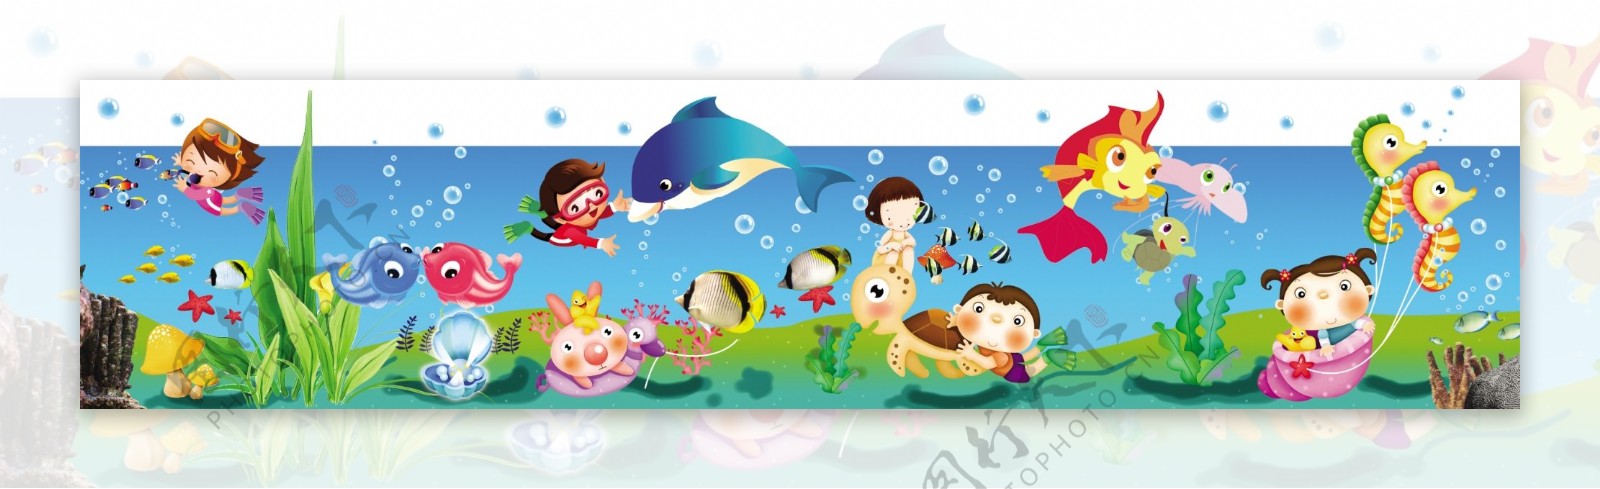 卡通海底世界幼儿园墙体画图片